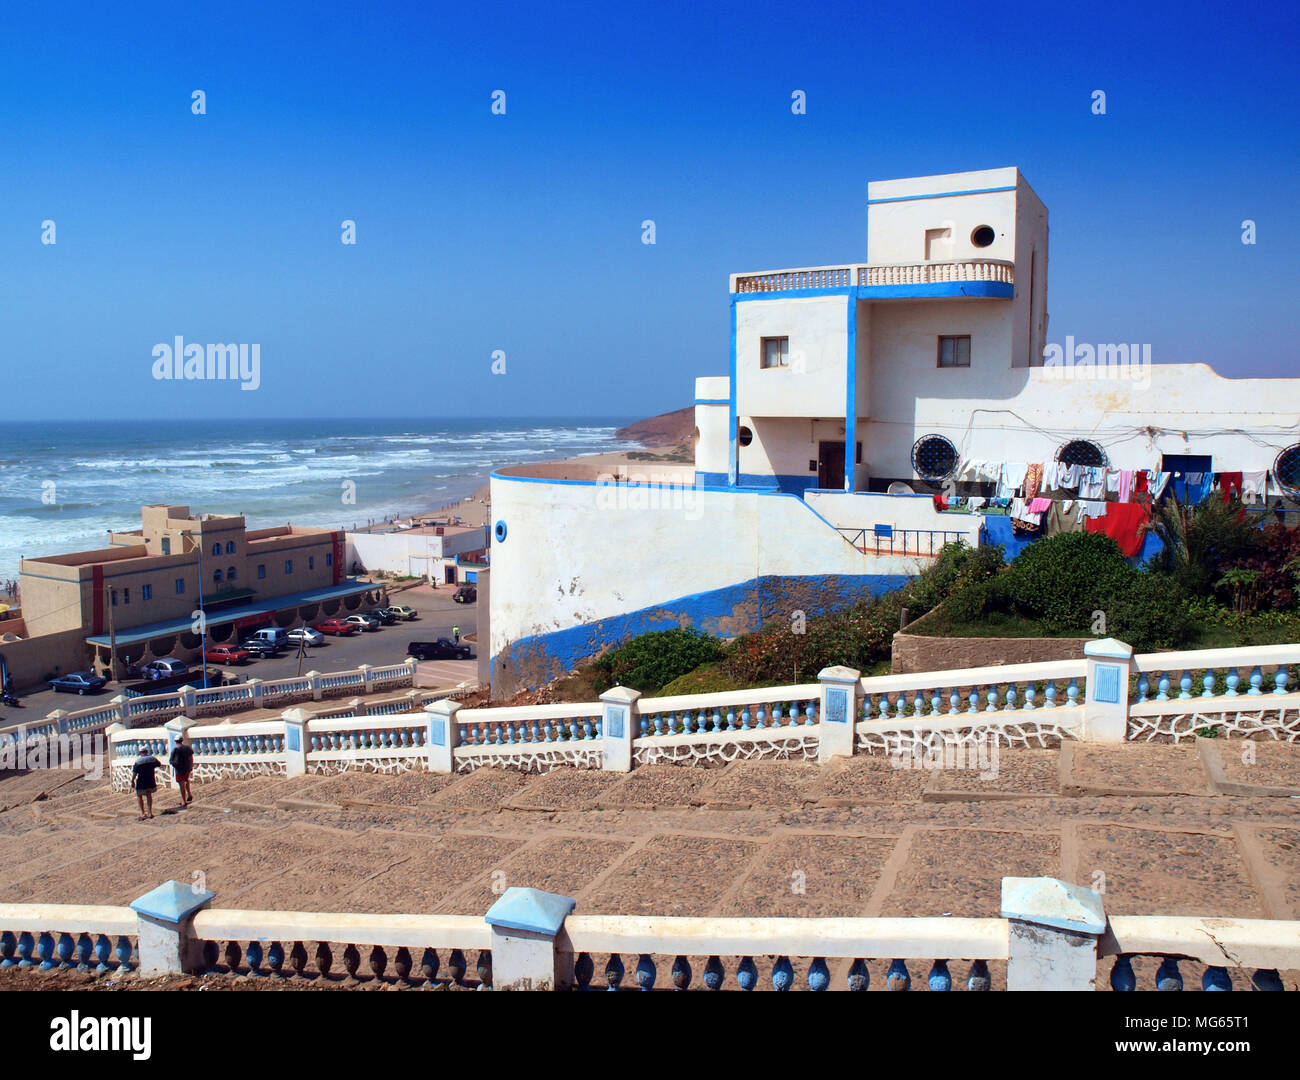 Art Deco architecture in the Moroccan coastal town of Sidi Ifni Stock Photo